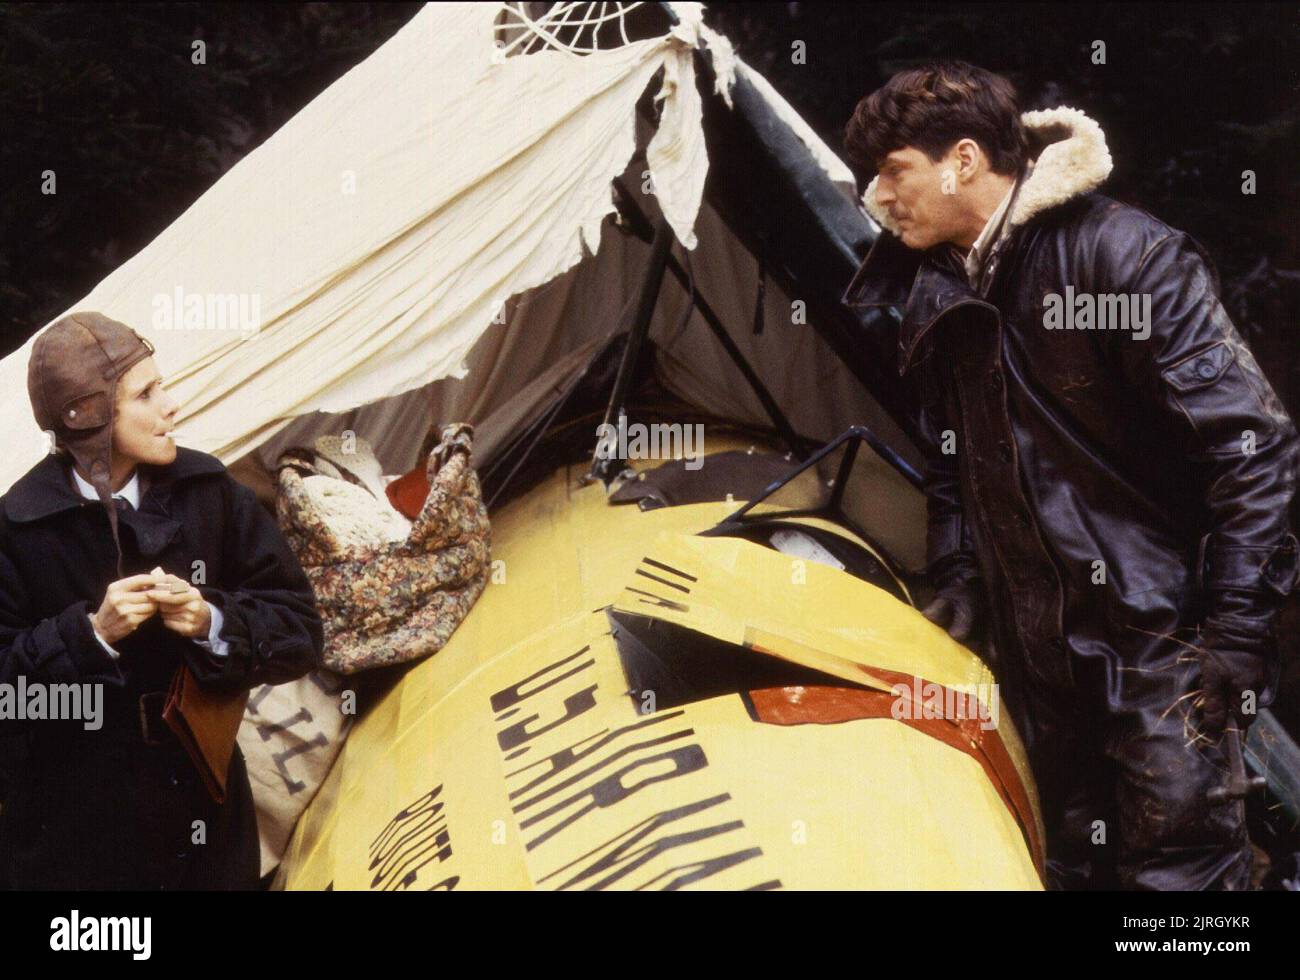 ROSANNA ARQUETTE, Christopher Reeve, l'aviateur, 1985 Banque D'Images